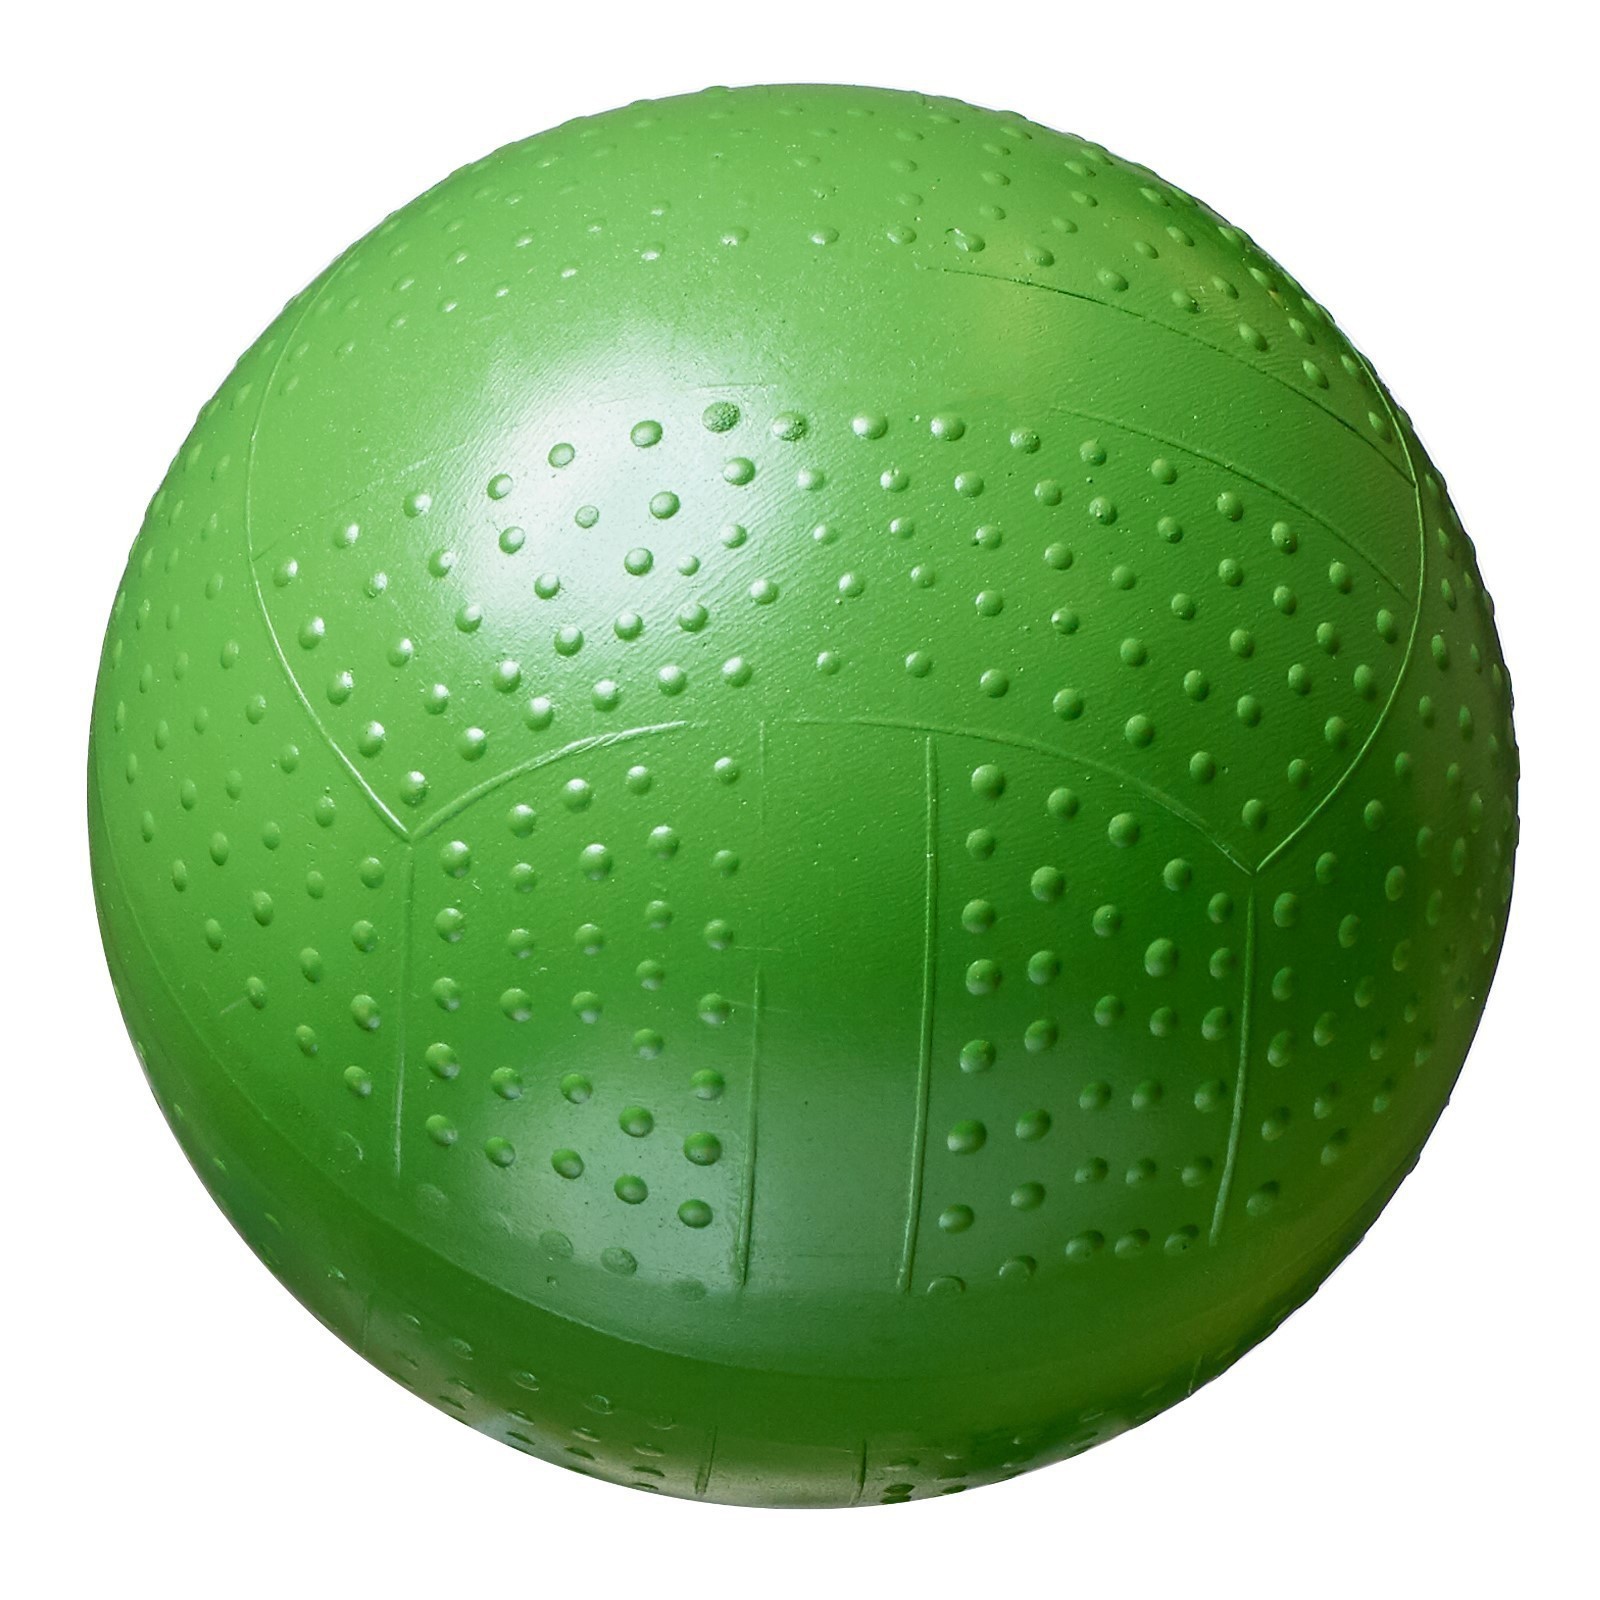 Мяч для ребенка 5 лет. Мяч фактурный диаметр 10 см цвета микс. Мяч фактурный, диаметр 100 мм, цвета р2-100 4476180. Мяч д 100мм фактурный р2 -100 резиновый. DENICS DF 100 мяч.